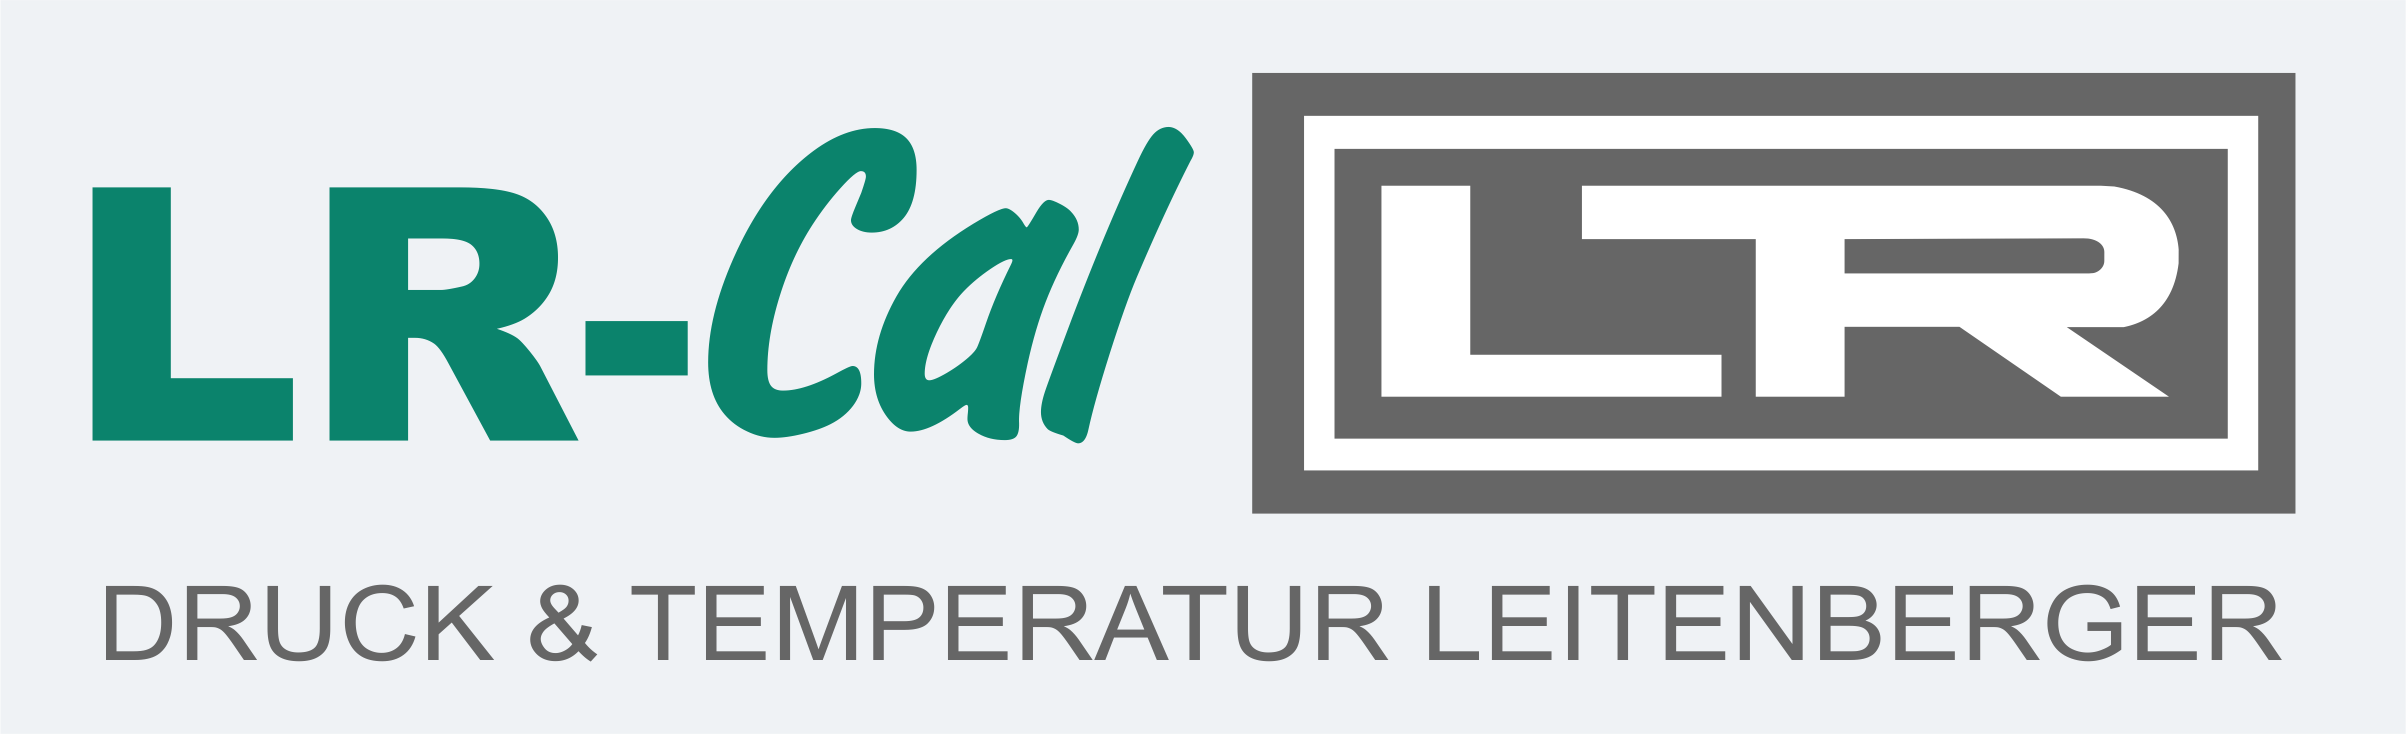 DRUCK & TEMPERATUR Leitenberger GmbH_logo